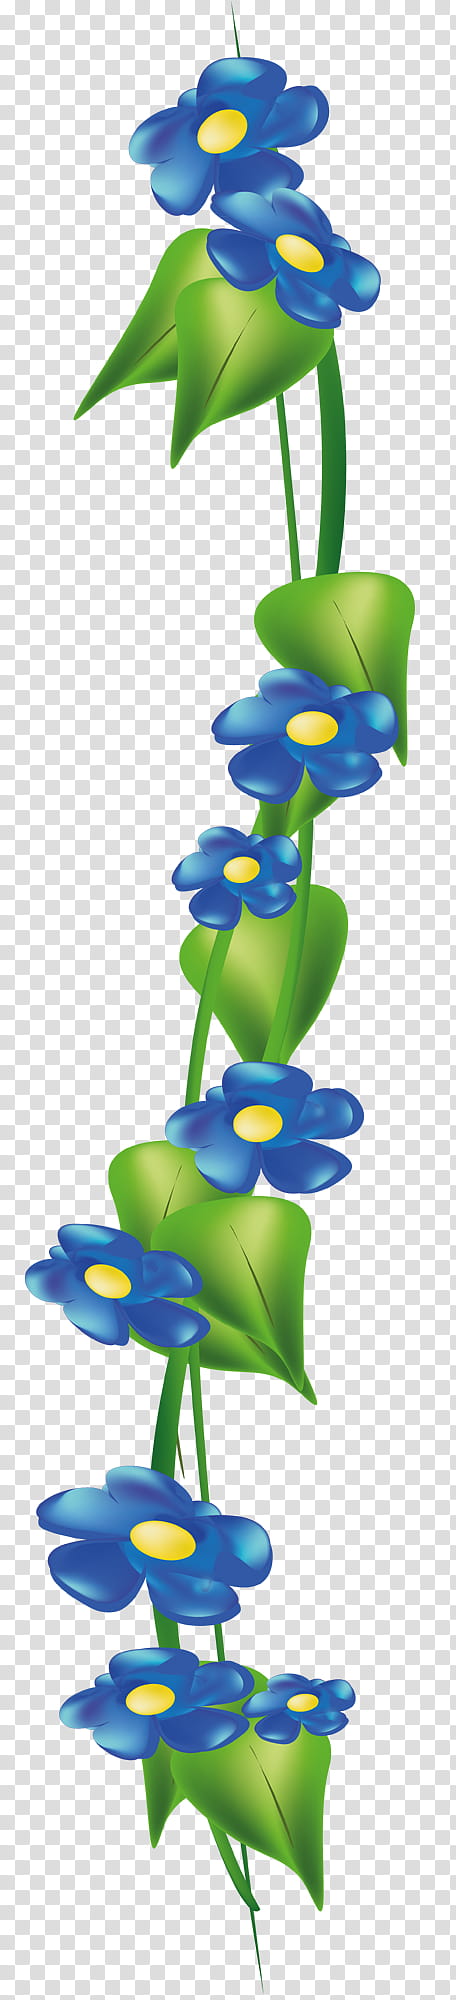 flower border, Blue, Plant, Petal, Forgetmenot, Plant Stem, Cut Flowers transparent background PNG clipart